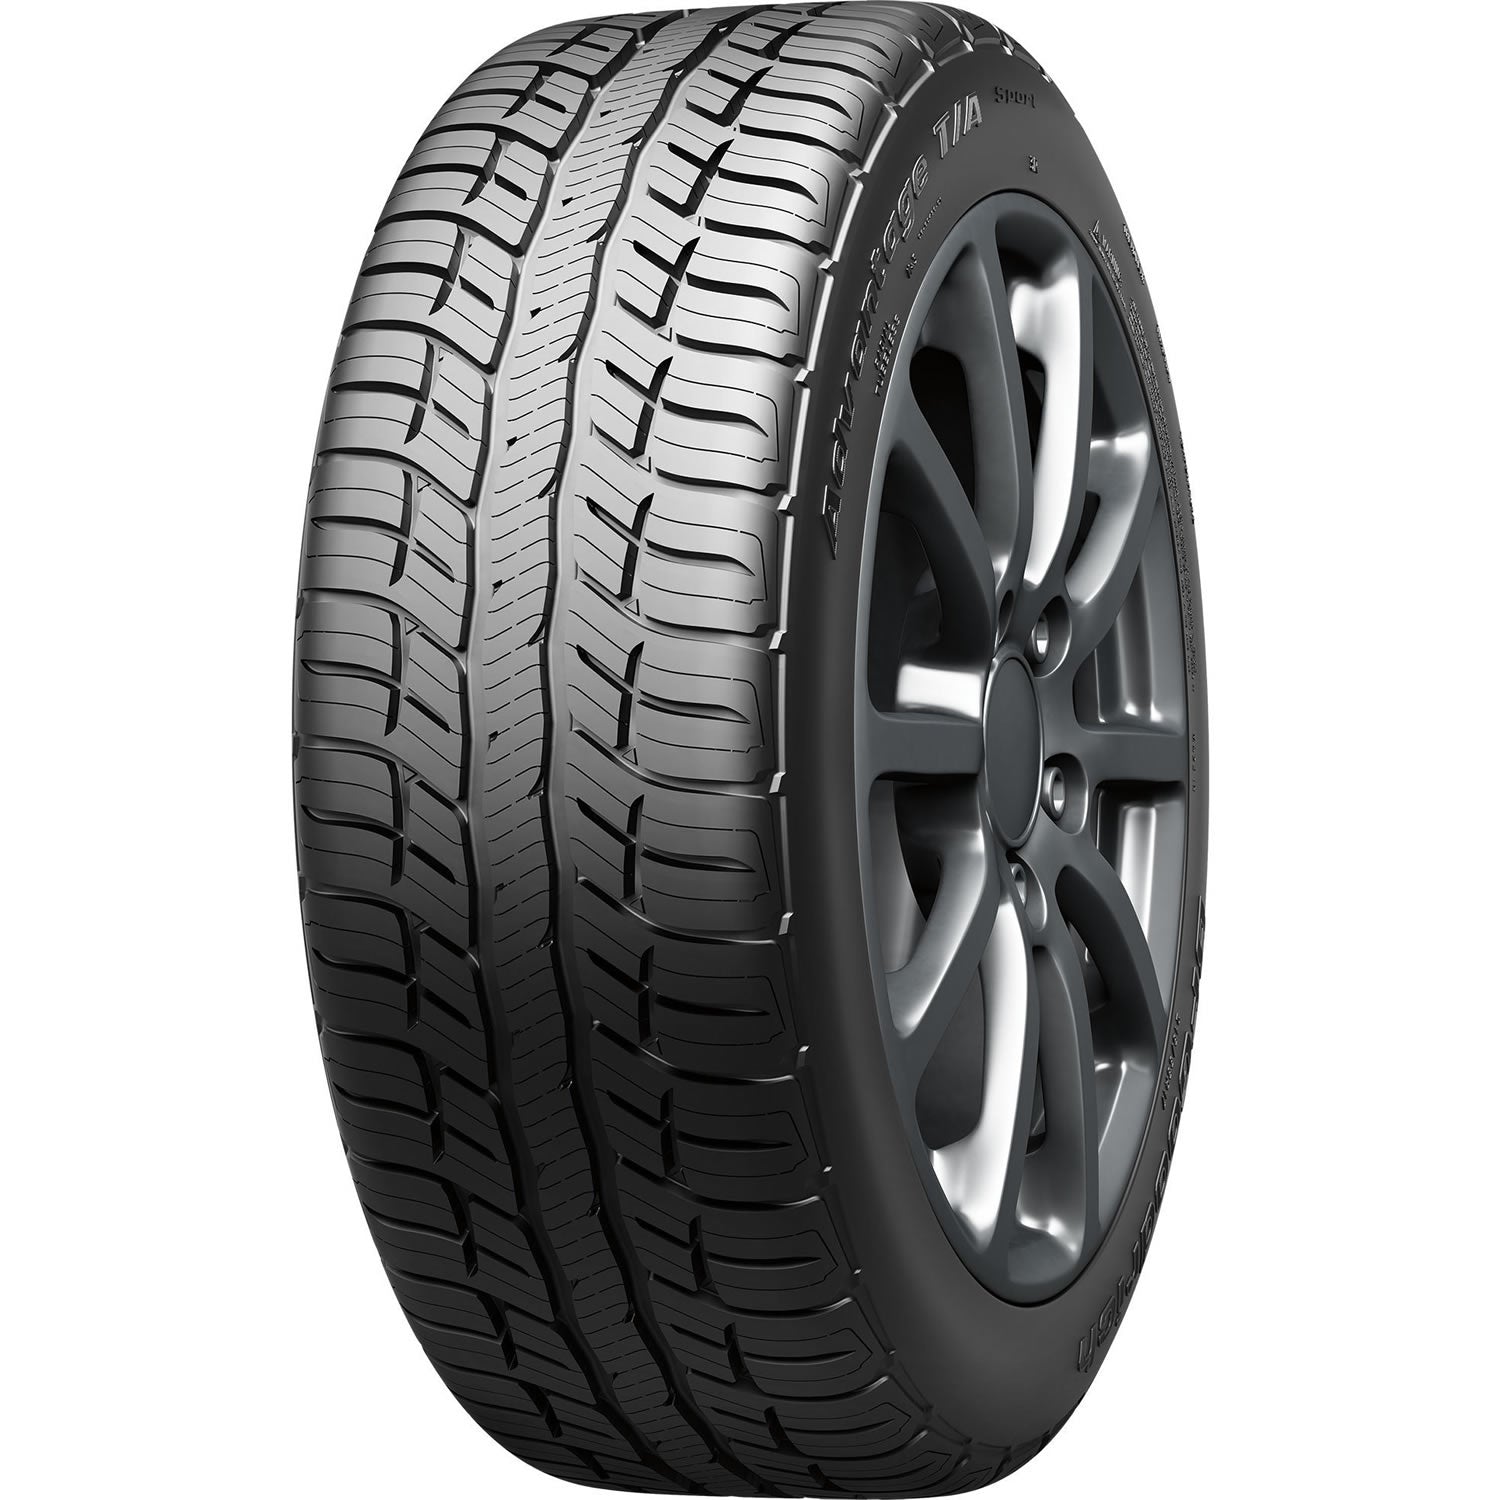 BFGOODRICH ADVANTAGE T/A SPORT 255/55R20 (31X10R 20) Tires